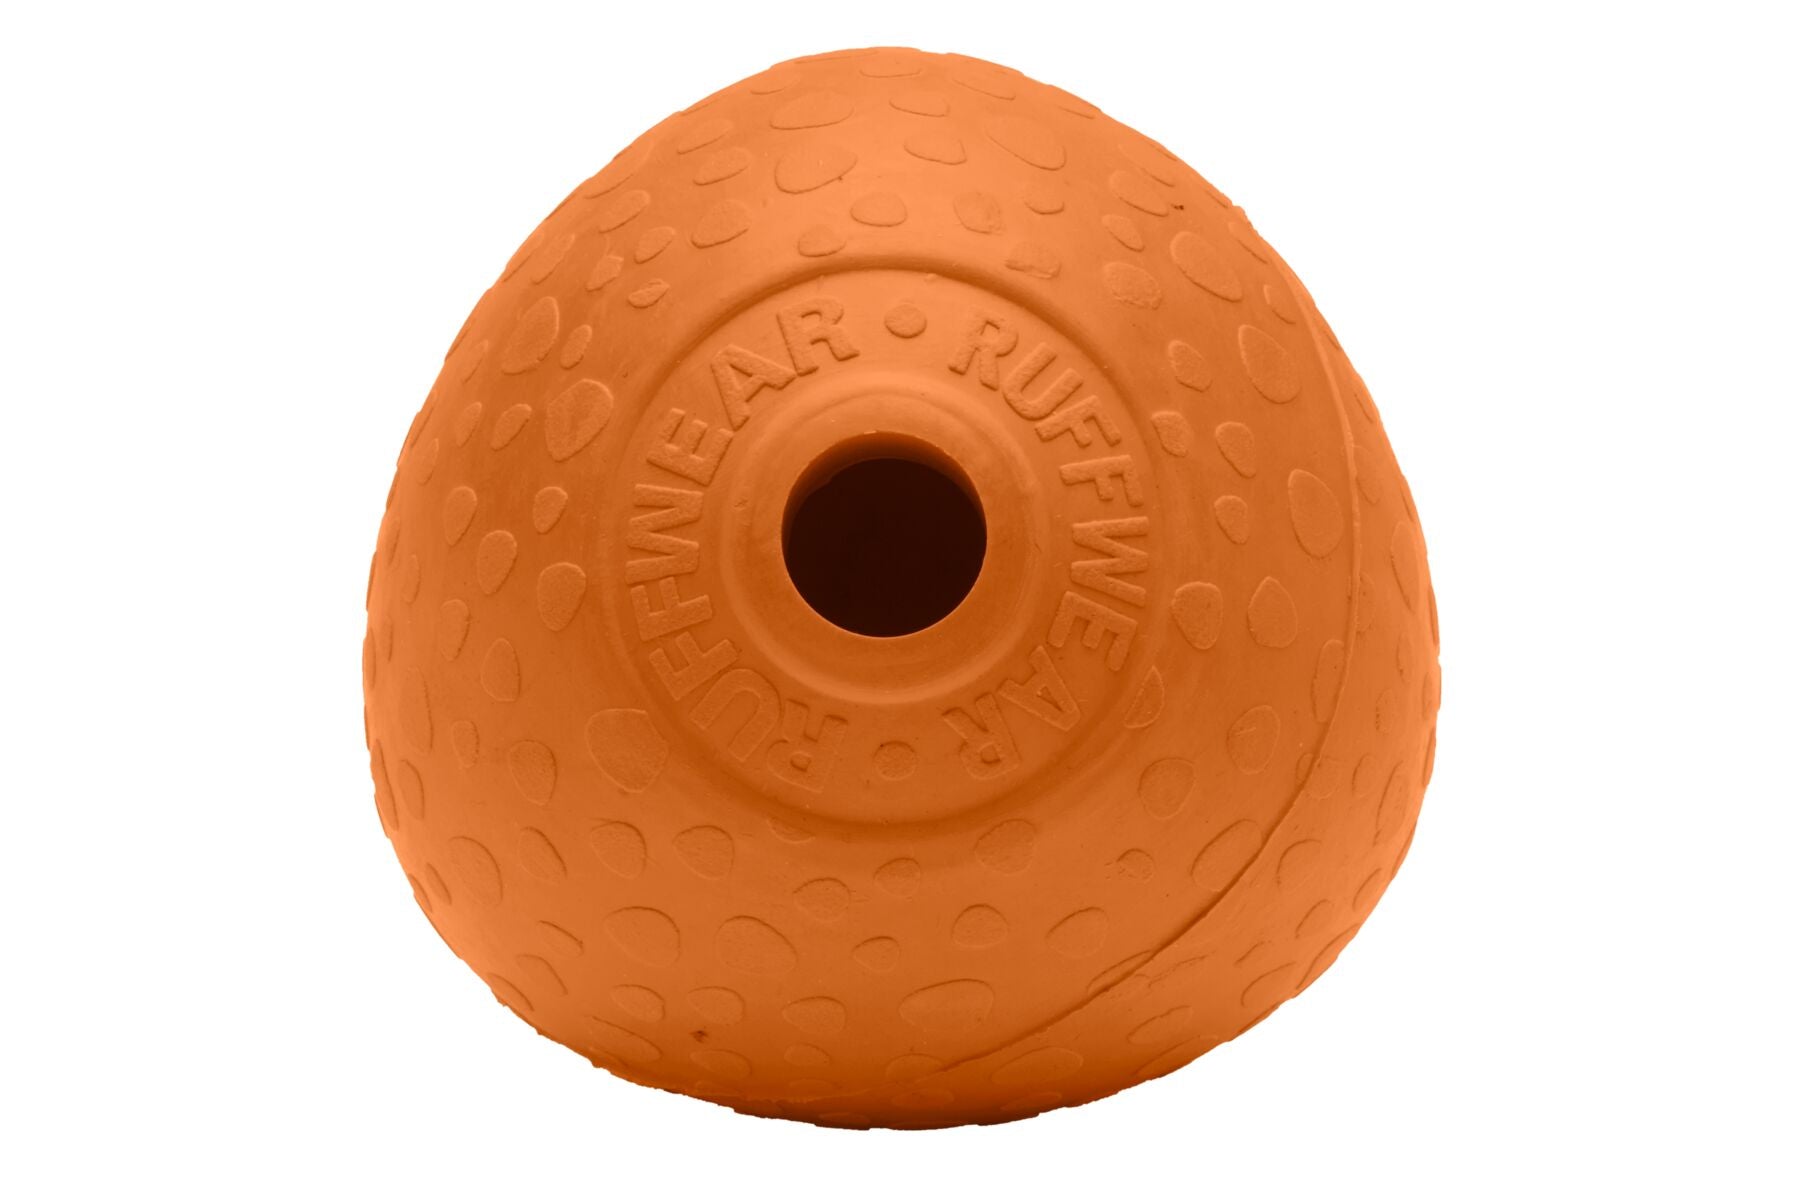 Huckama® Pelota para Aventar en Naranja (Campfire  Orange)  de Ruffwear®